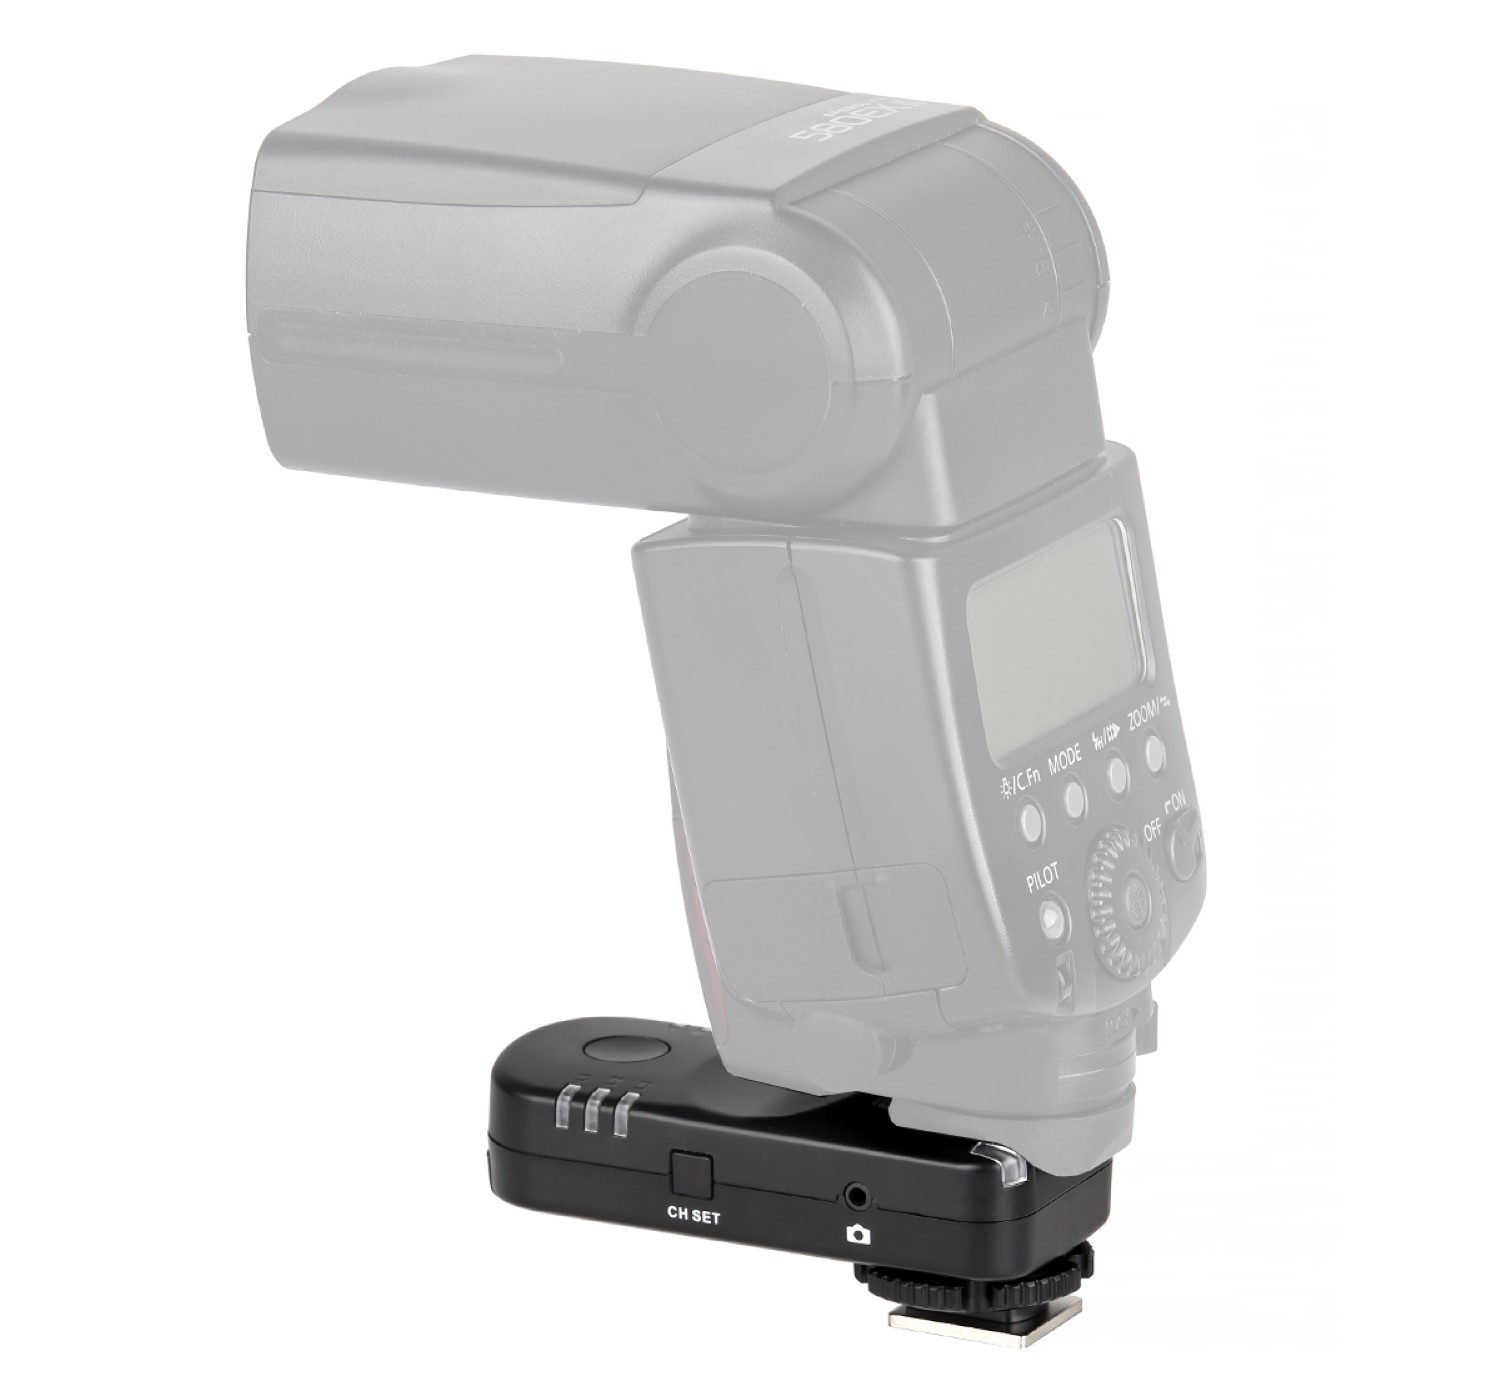 ayex Funk Blitzauslöser und Kamera-Fernauslöser für Canon EOS und Powershot, Blitz- & Kameraauslöser Set inkl. 3 Transceivern AX-BA1